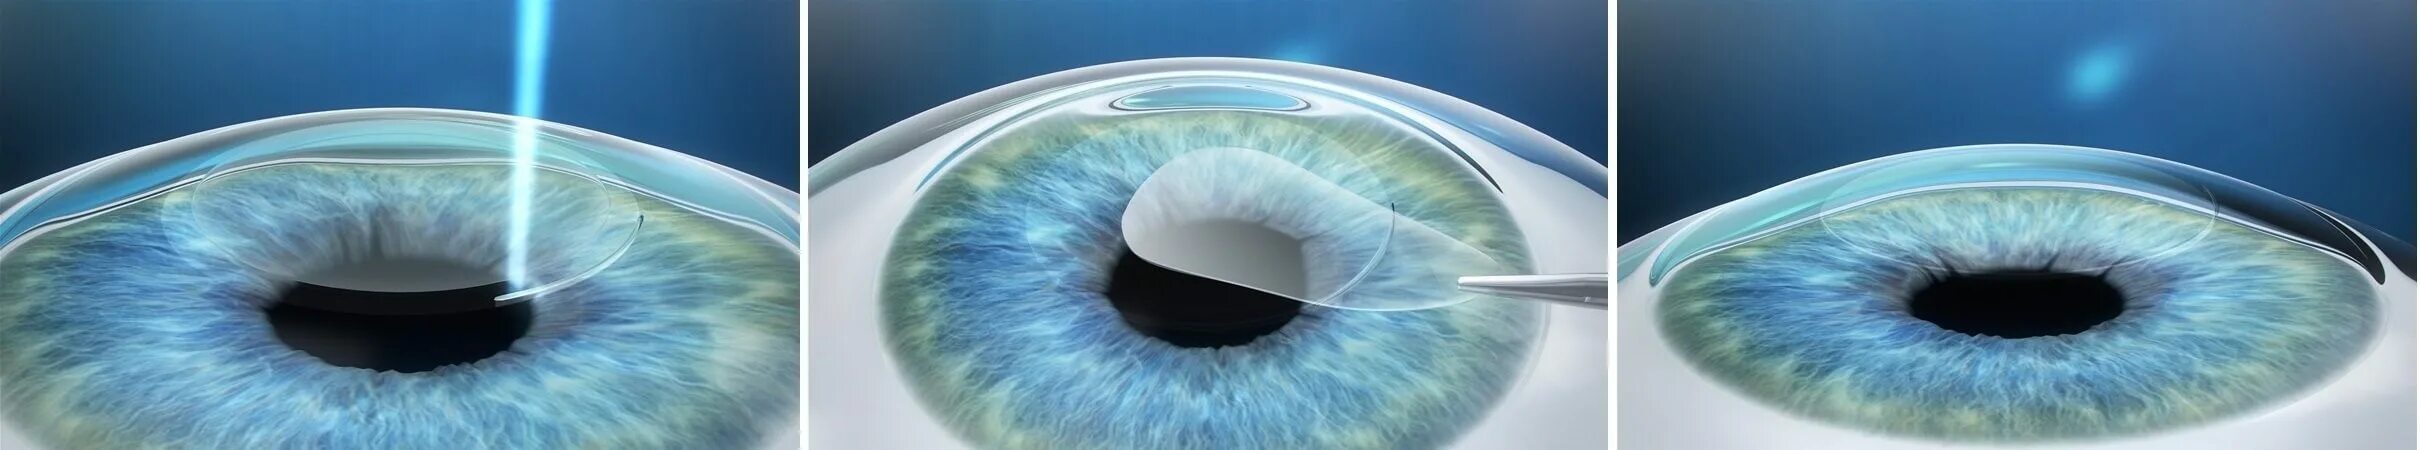 Лазерная коррекция зрения спустя много лет отзывы. Лазерная коррекция зрения Femto ласик. Рефракционная экстракция лентикулы. LASIK smile операция. Лазерная рефракционная кератопластика (методом Femto super LASIK).